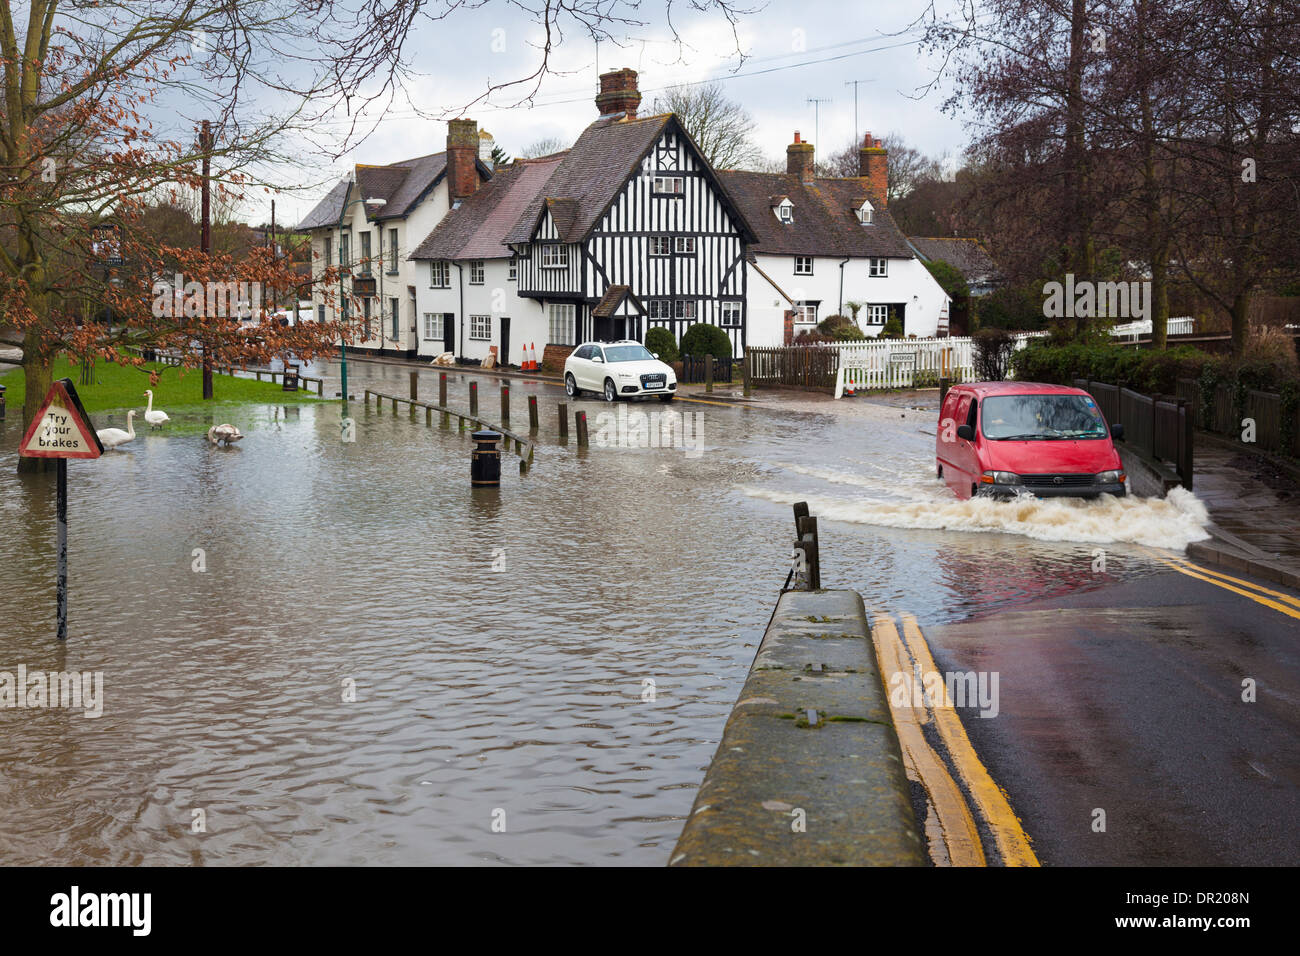 Van duros a través del río inundado para llegar a Puente, Eynsford, Kent, UK, en invierno Foto de stock